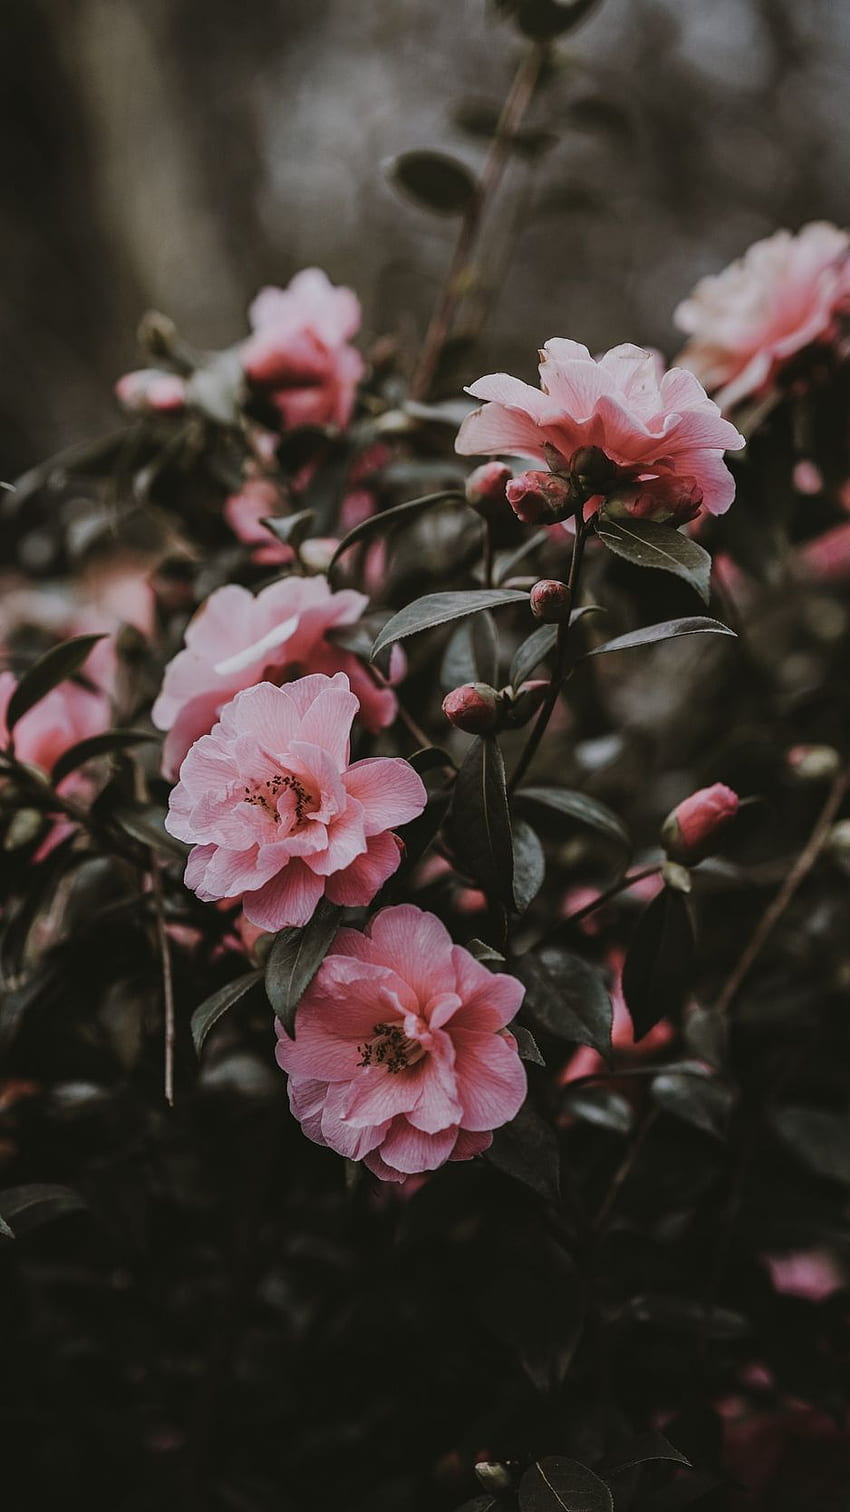 dzika róża, krzak, różowy, kwiaty - عکس گل برای پروفایل Tapeta na telefon HD